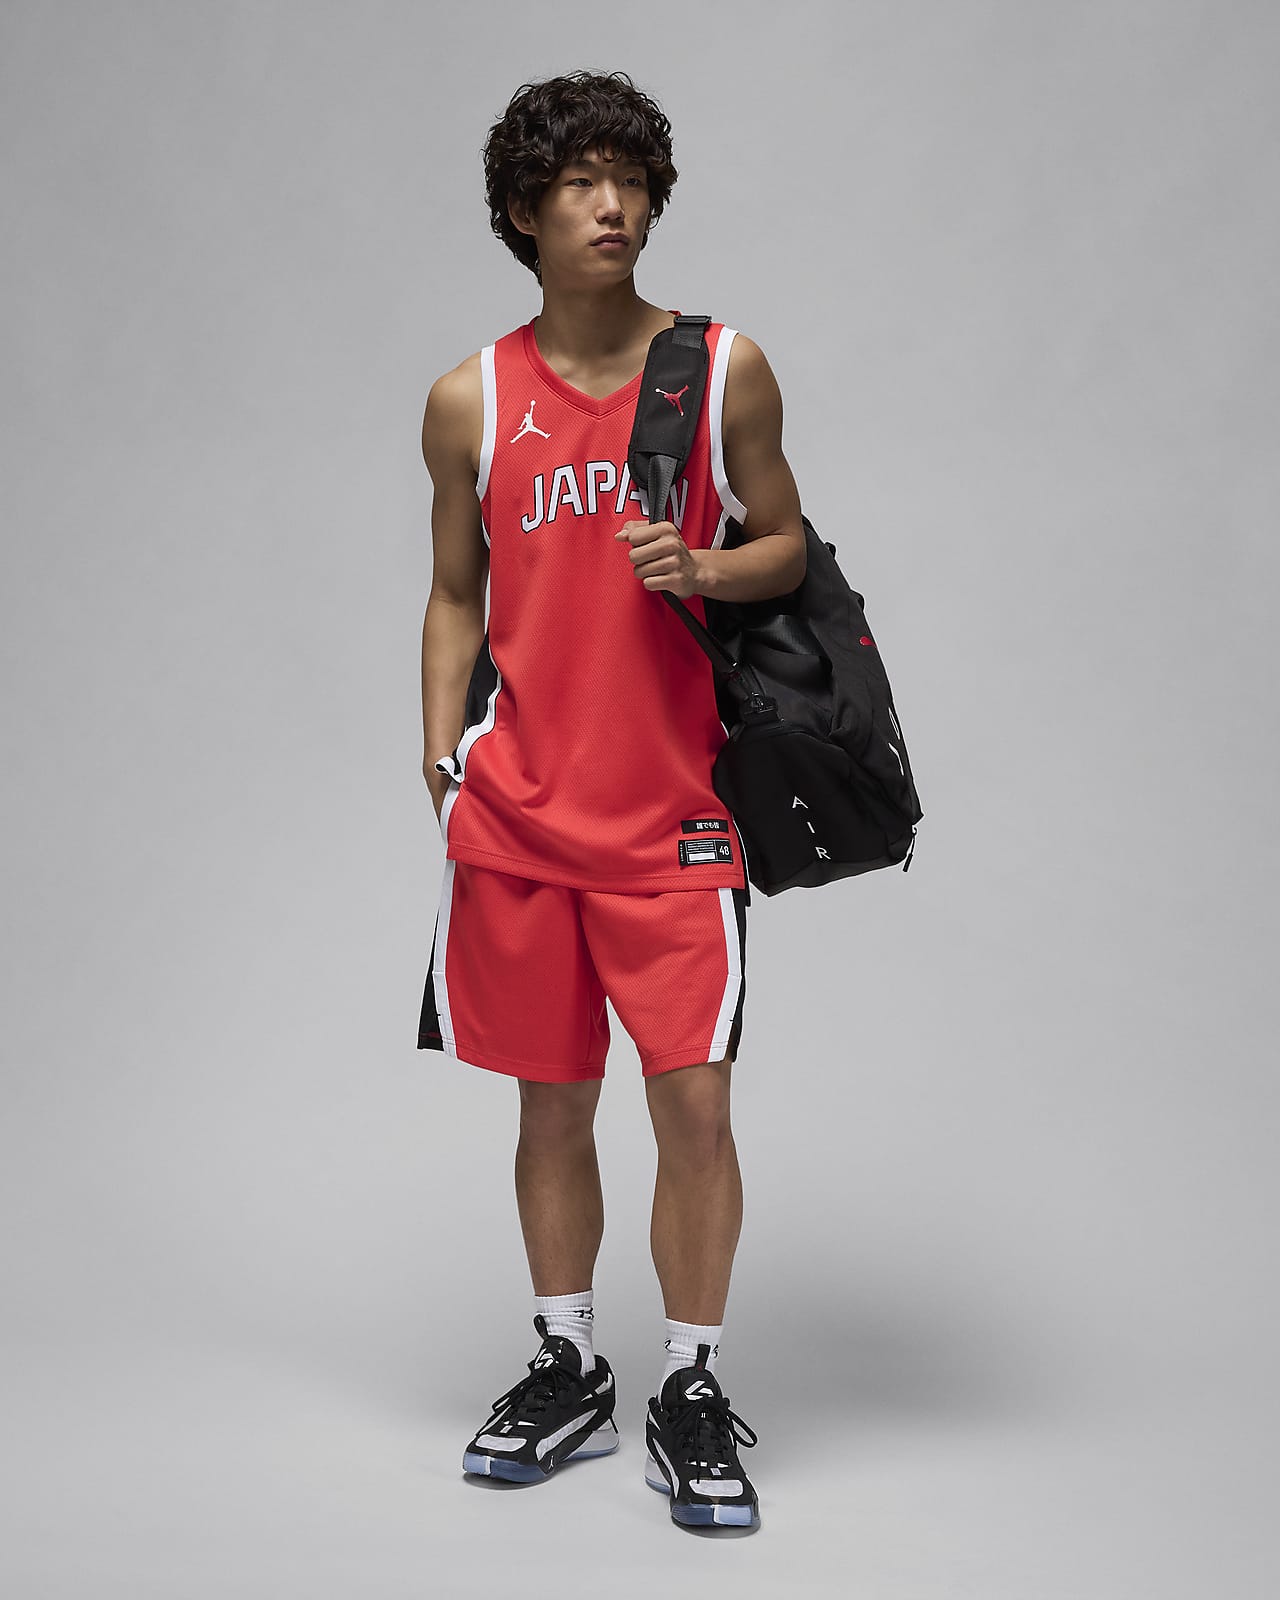 日本 リミテッド ロード メンズ ナイキ バスケットボールショートパンツ - パーツ